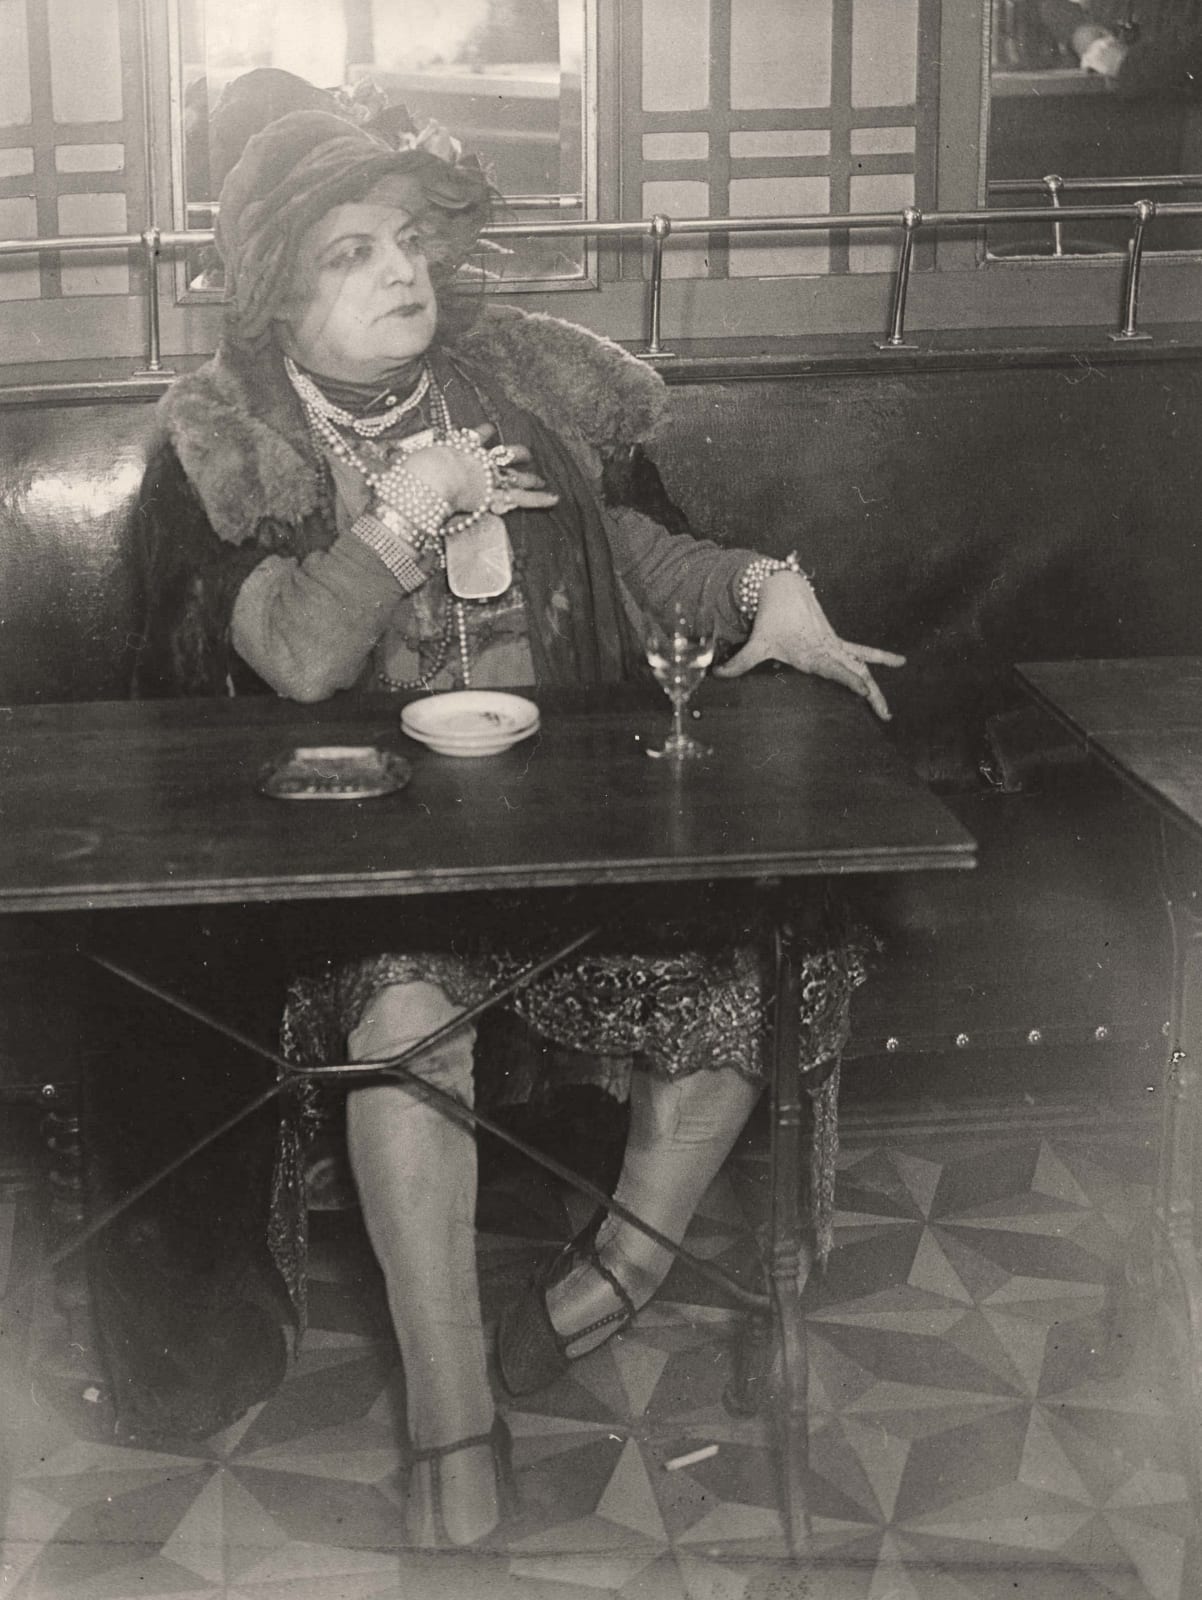 Brassaï La Môme Bijou, Bar de la Lune, Paris at bar table with drink 